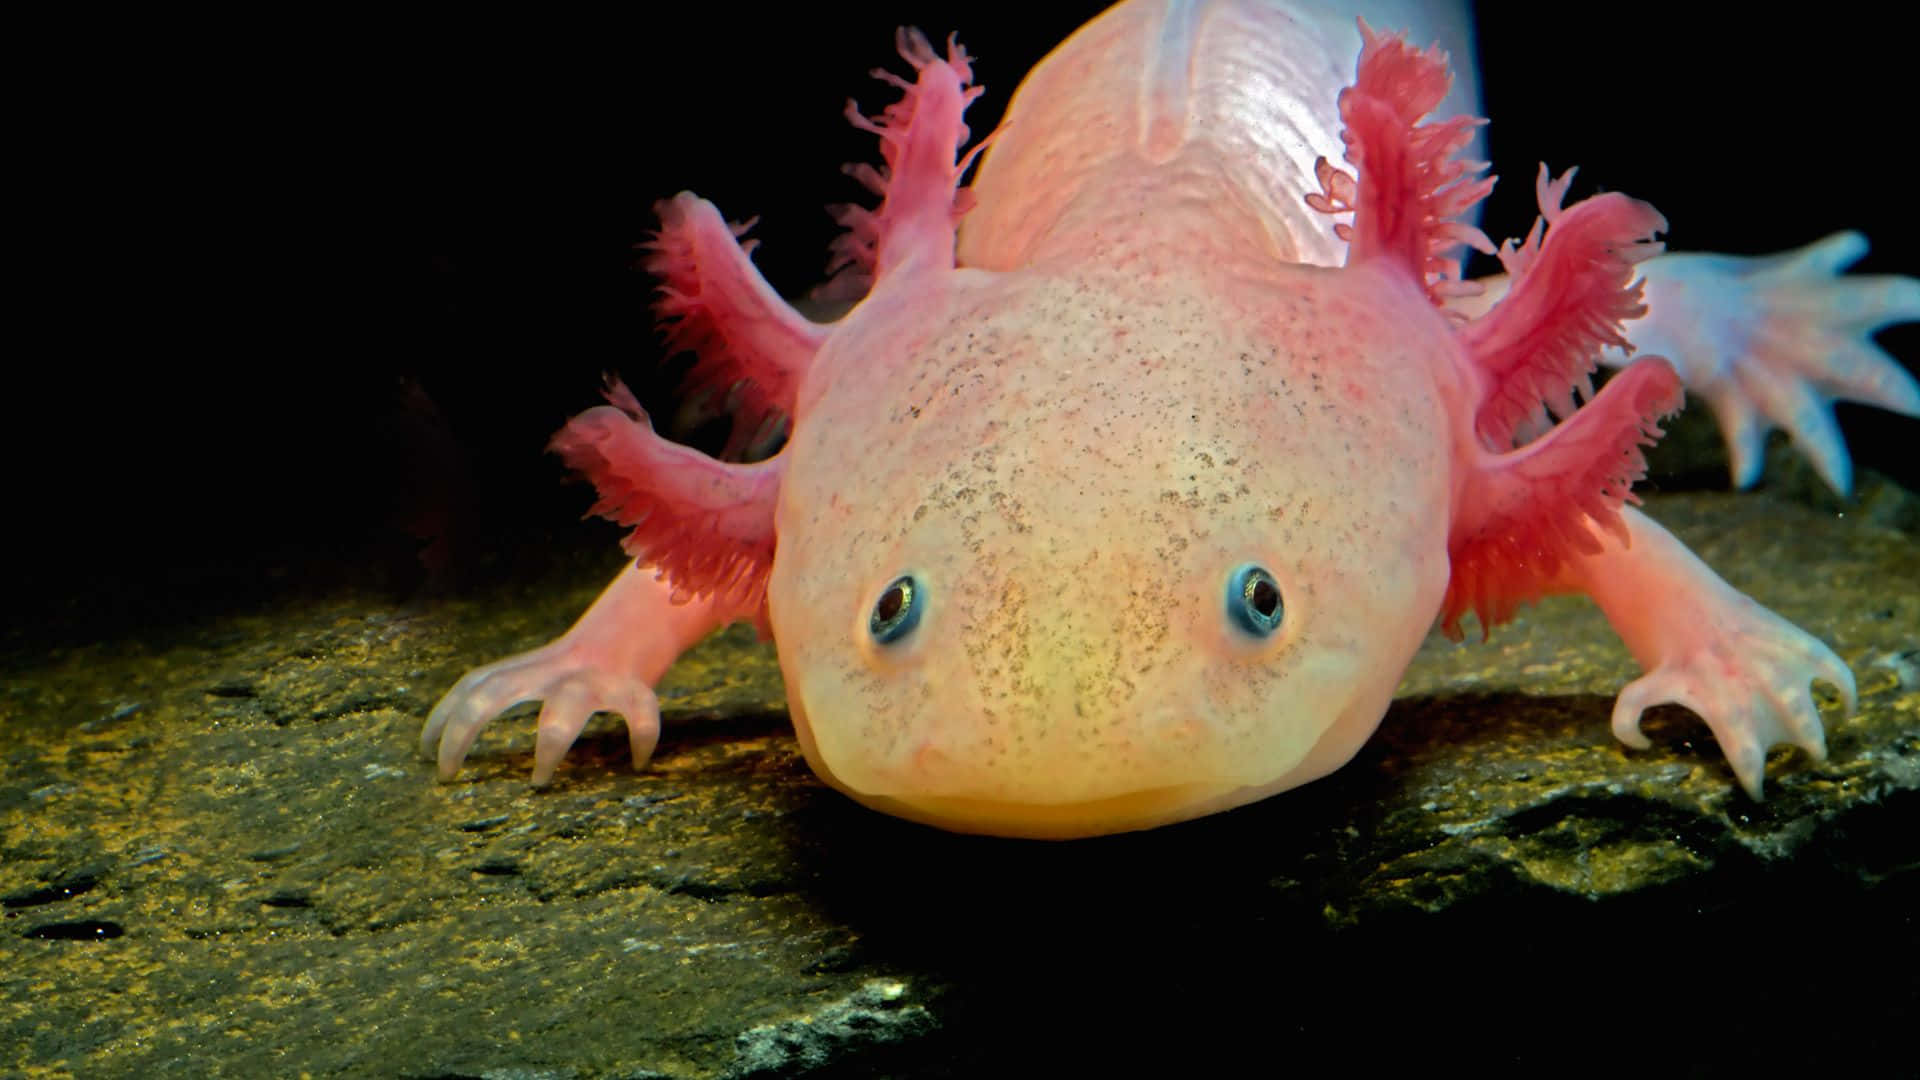 An Axolotl posing for the camera